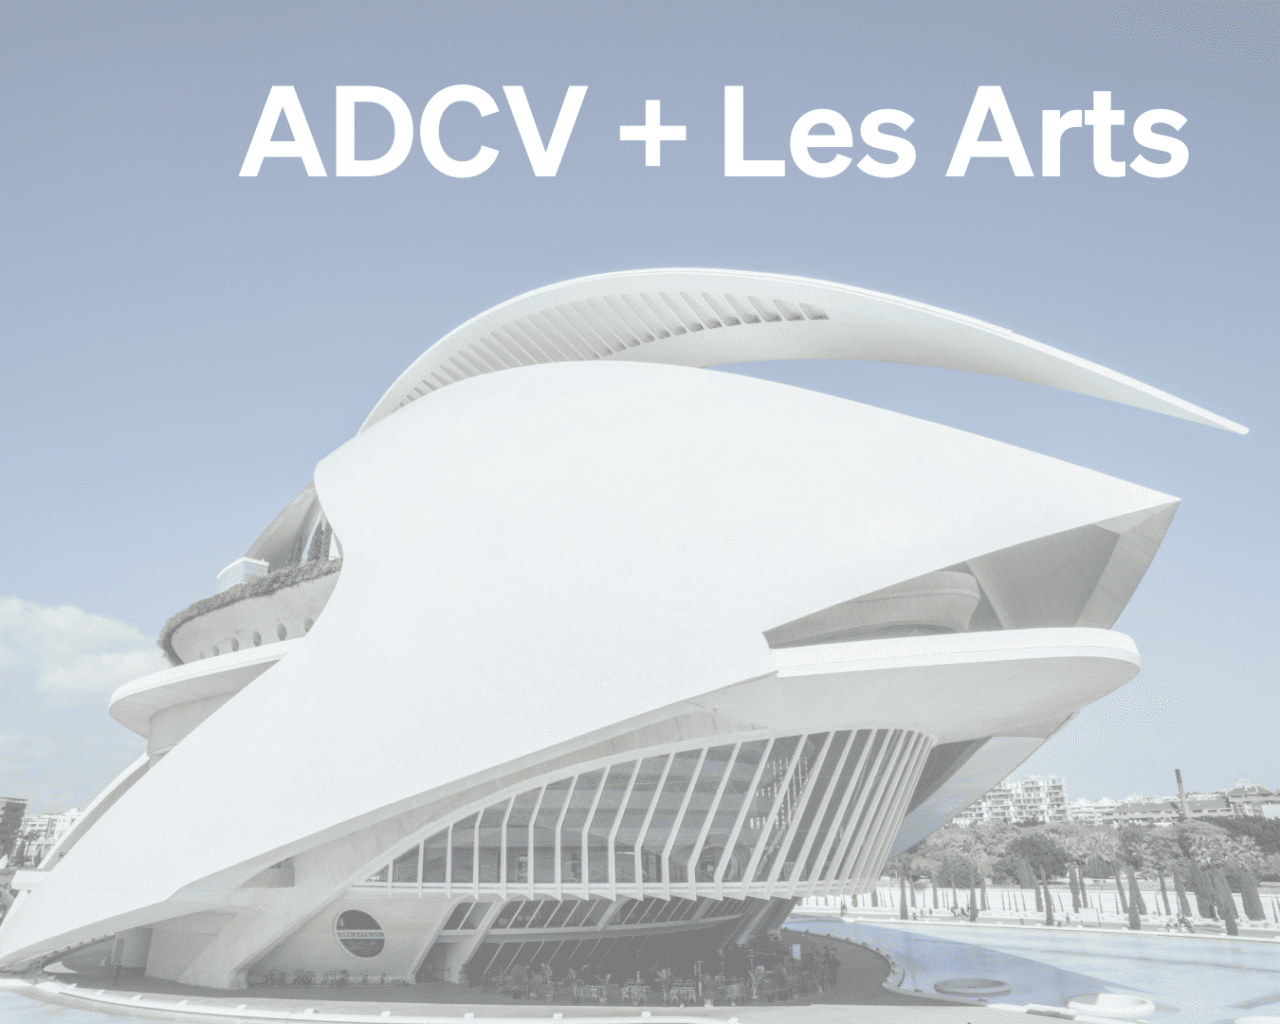 Colaboración de ADCV y Les Arts con acciones especiales para los y las socias